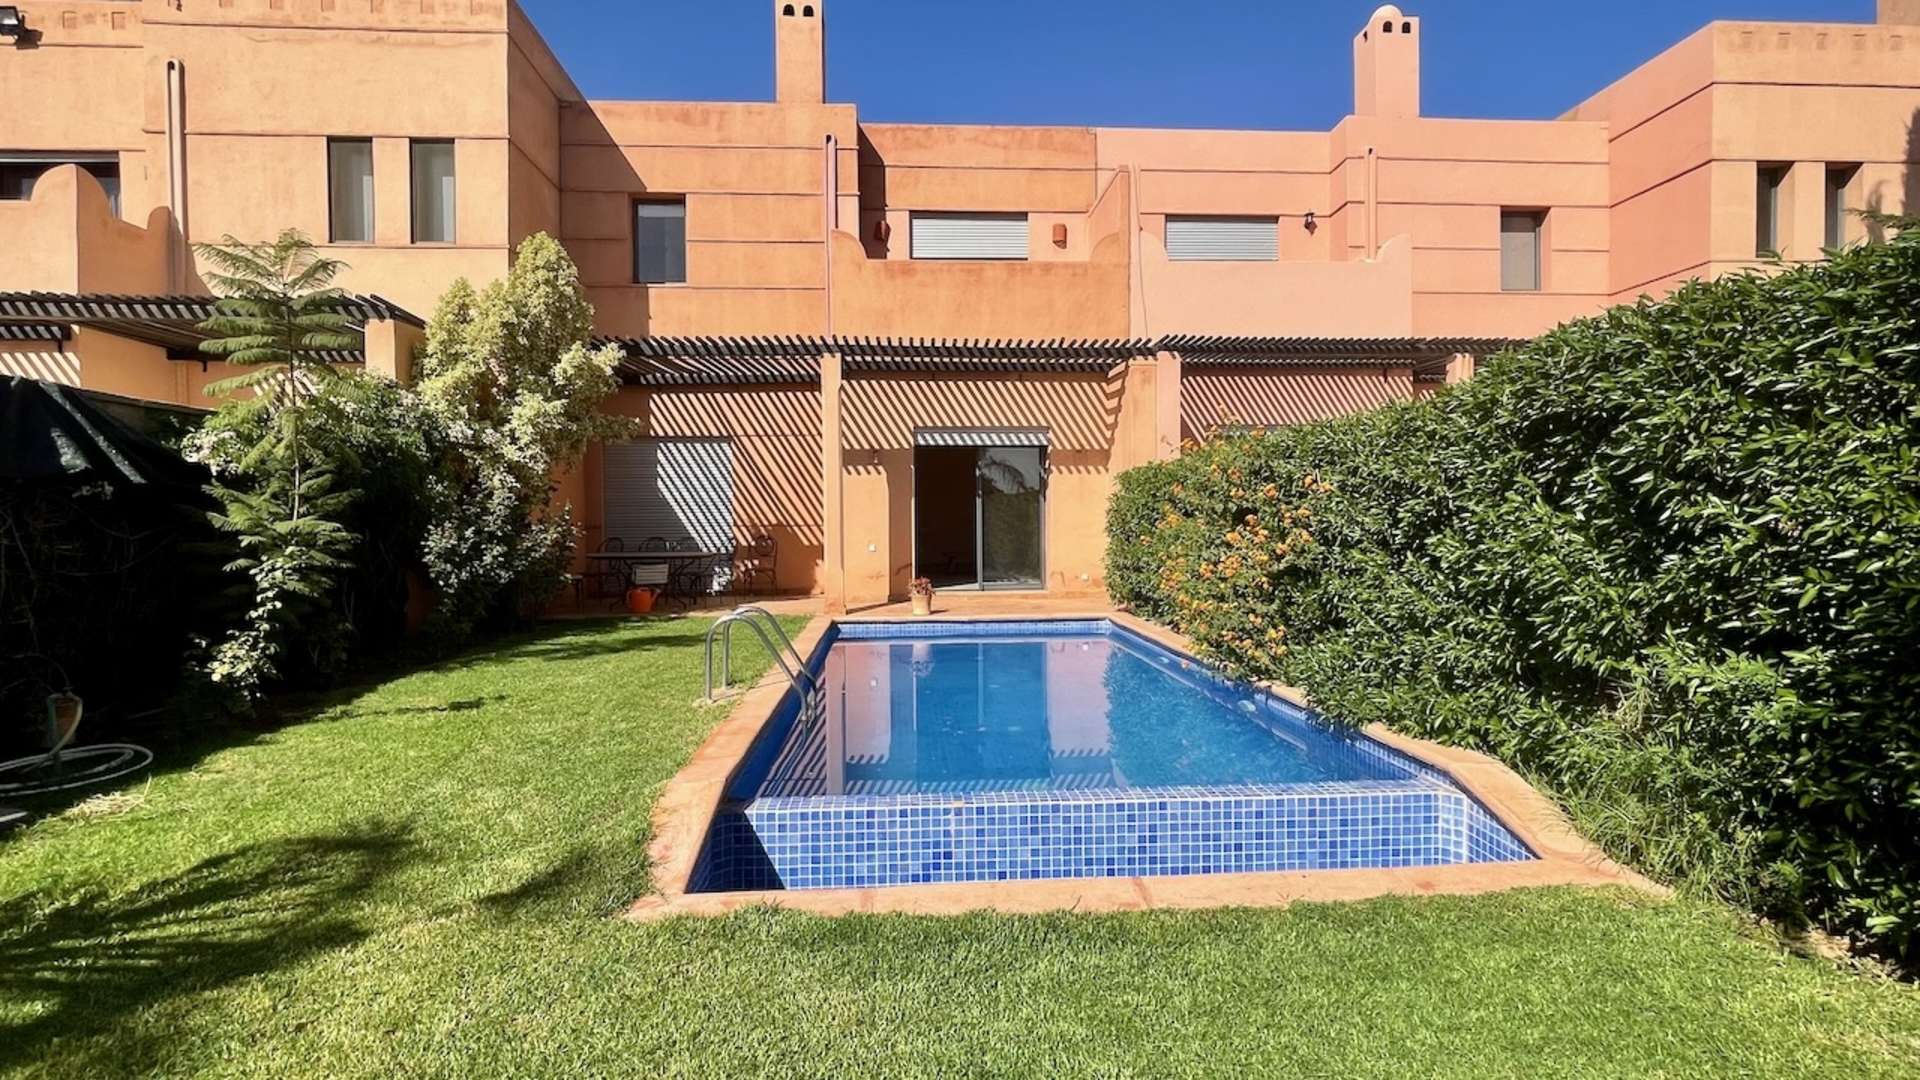 Vente,Villa,Villa Quasi-Neuve bien placée face à l'Atlas dans un resort golfique à 20 min. du centre de Marrakech,Marrakech,Route de l'Ourika